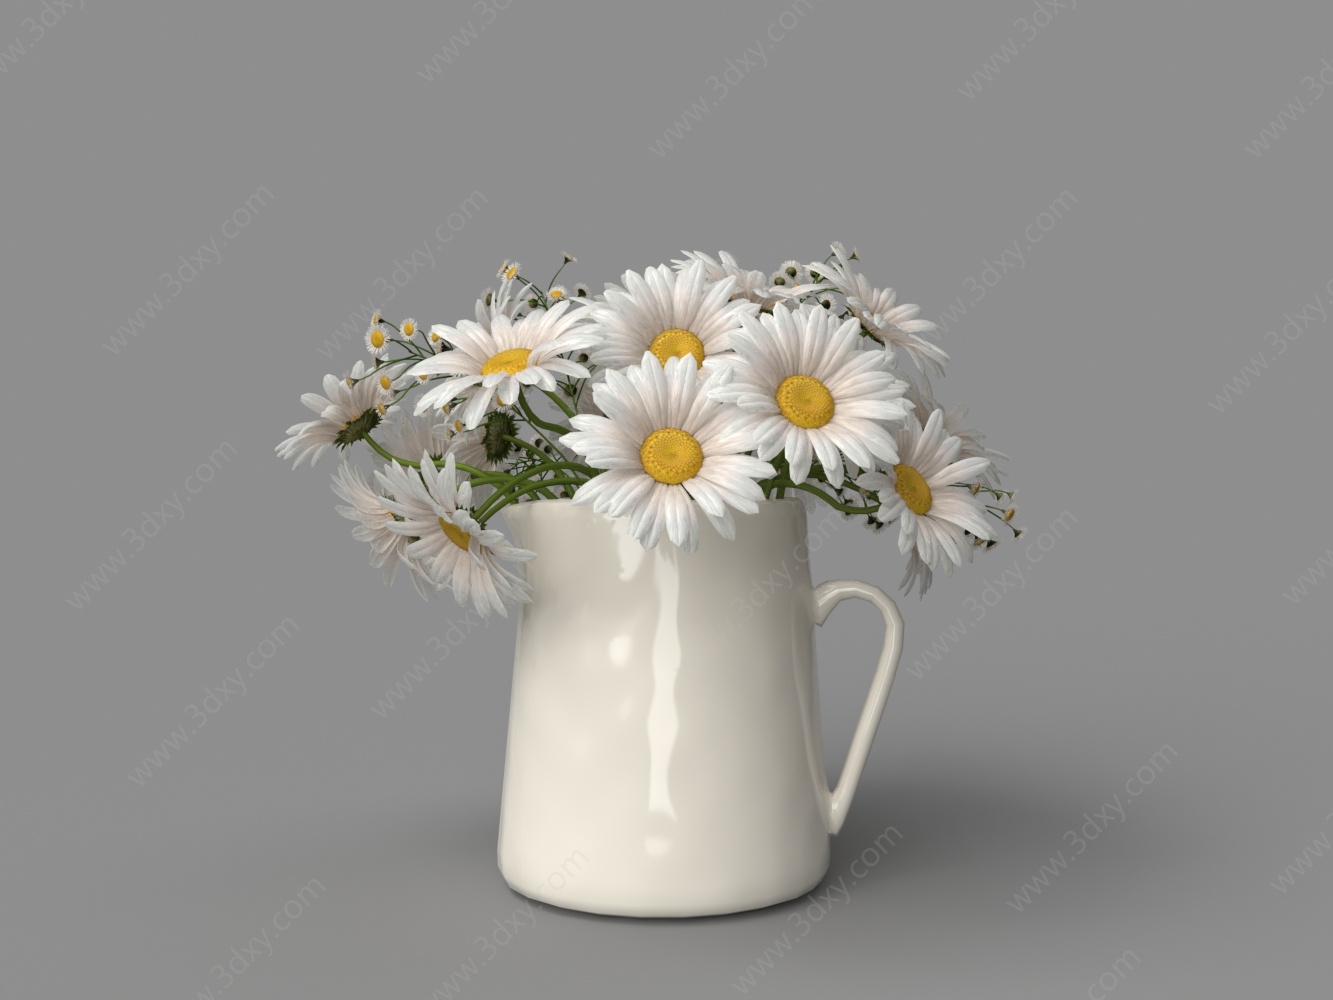 水壶花瓶菊花3D模型